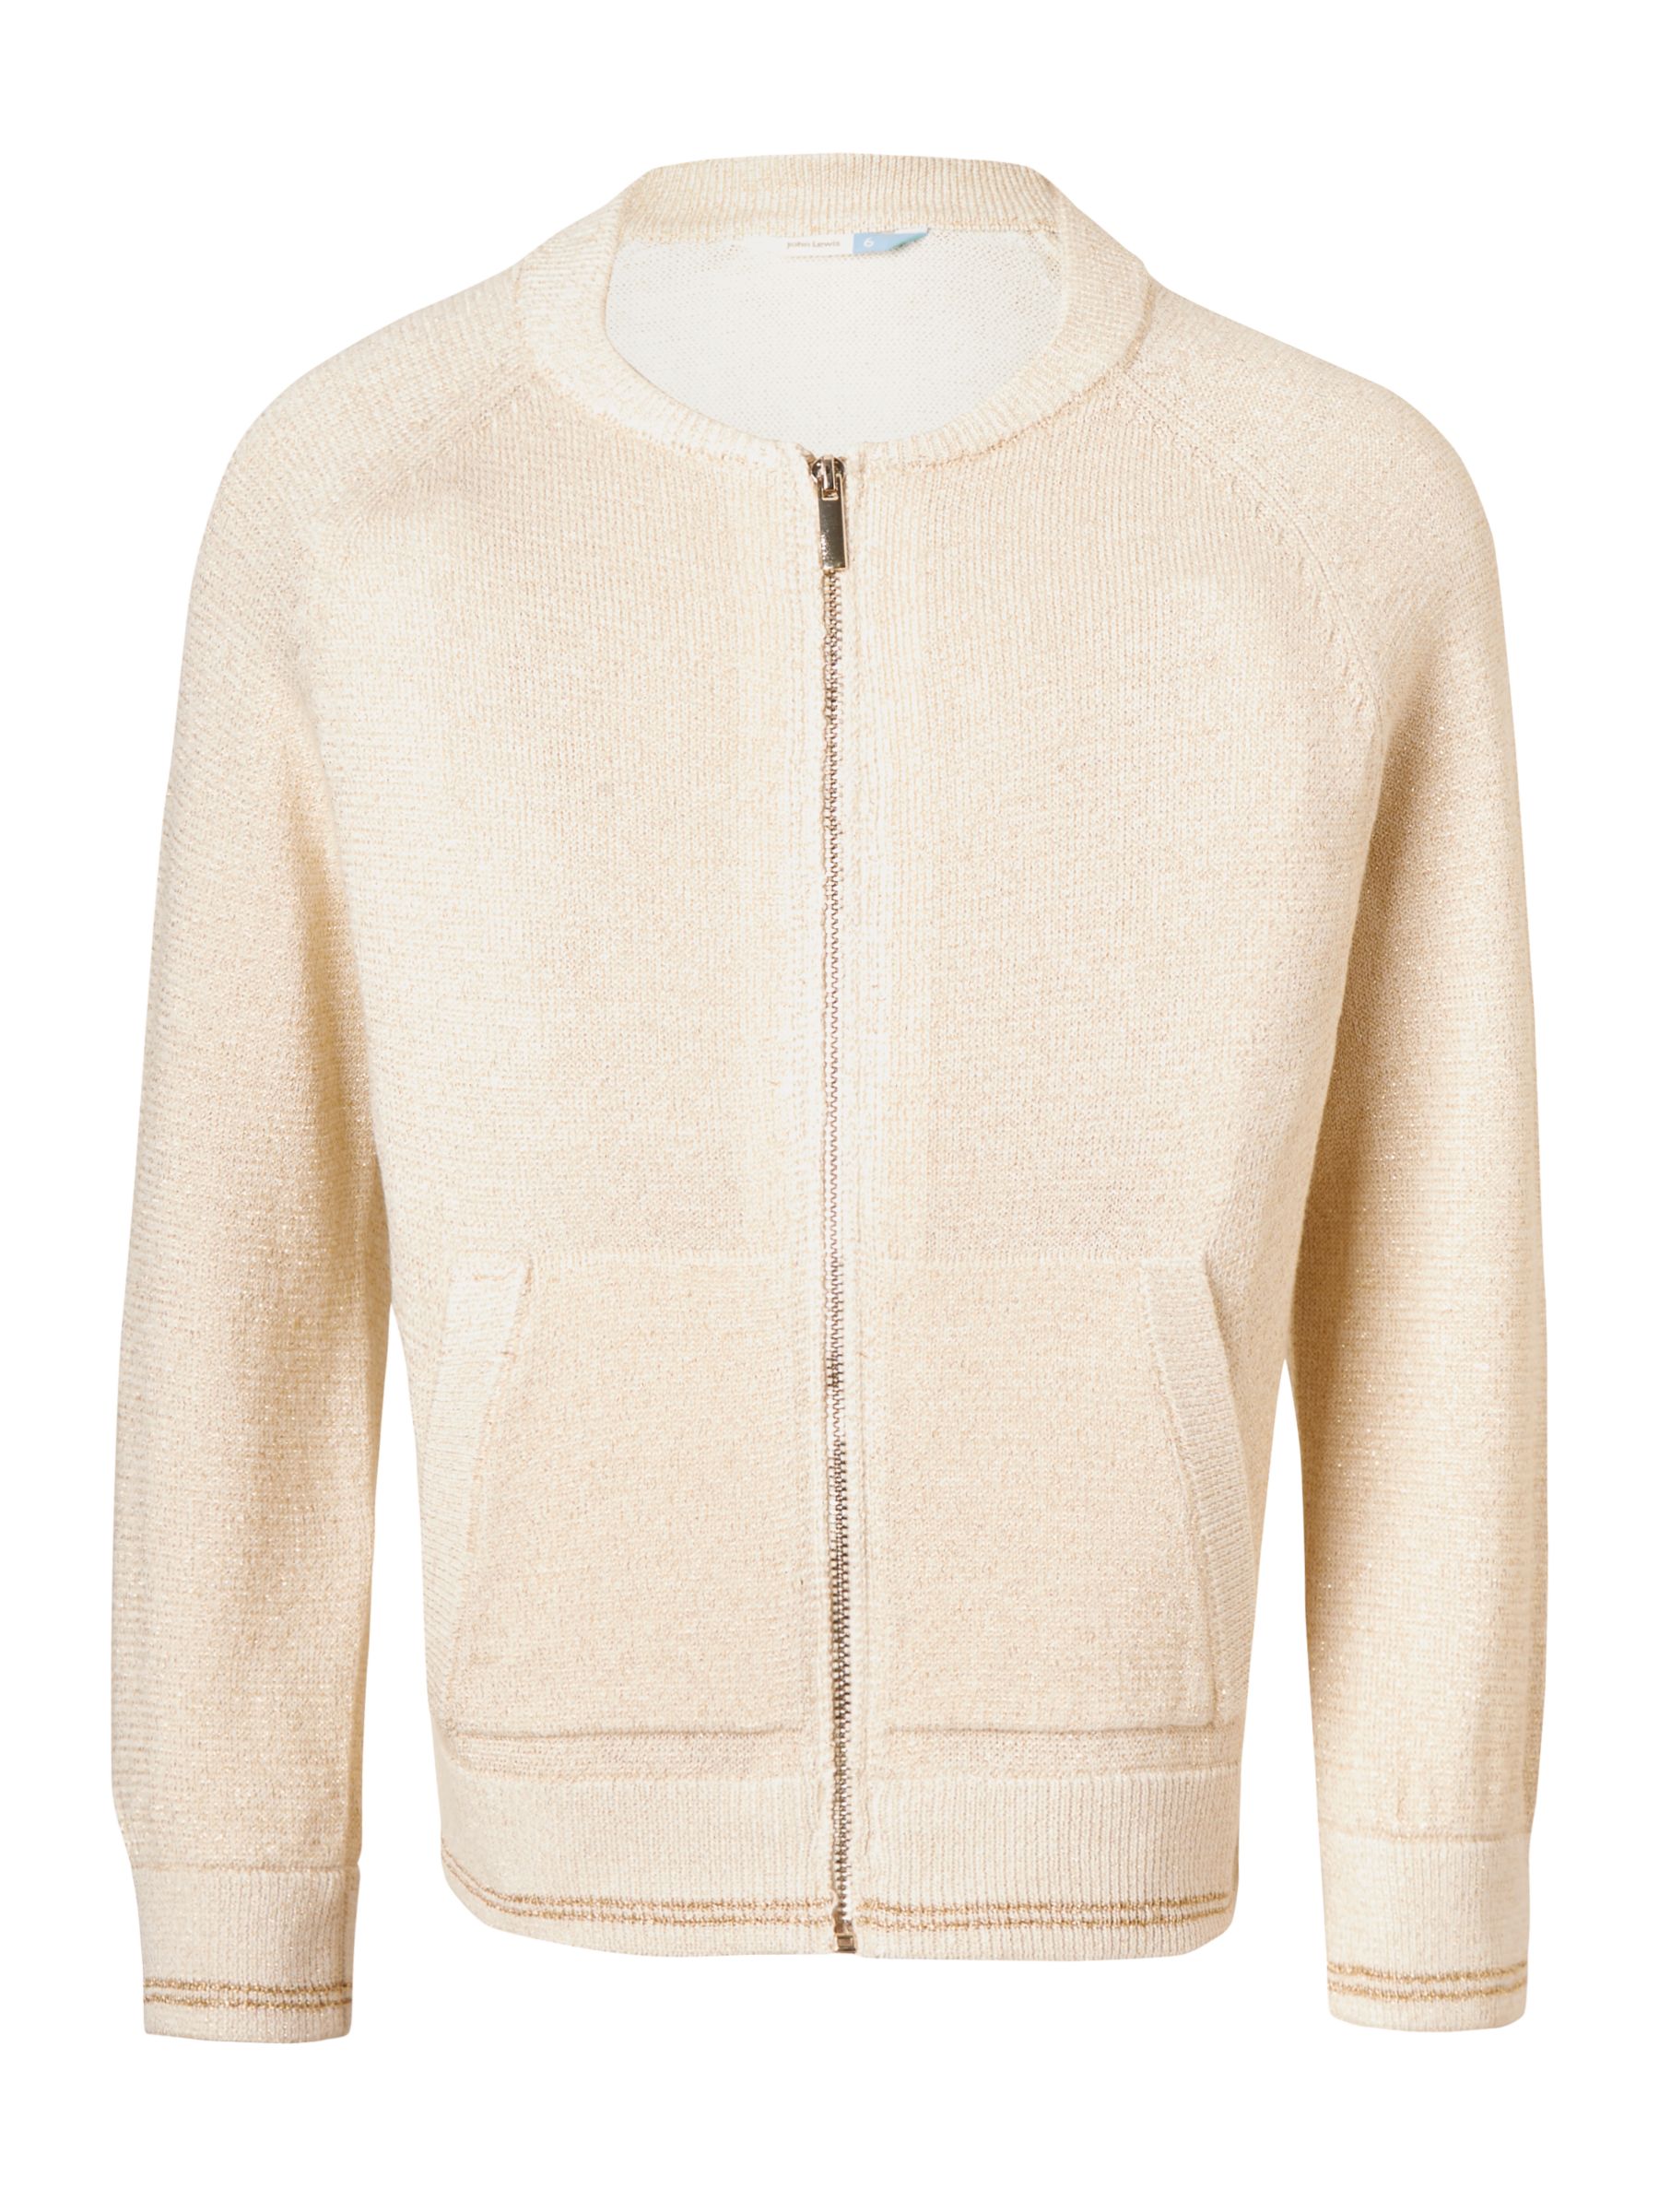 John Lewis & Partners Girls' Lurex Knitted Bomber Jacket, Gardenia